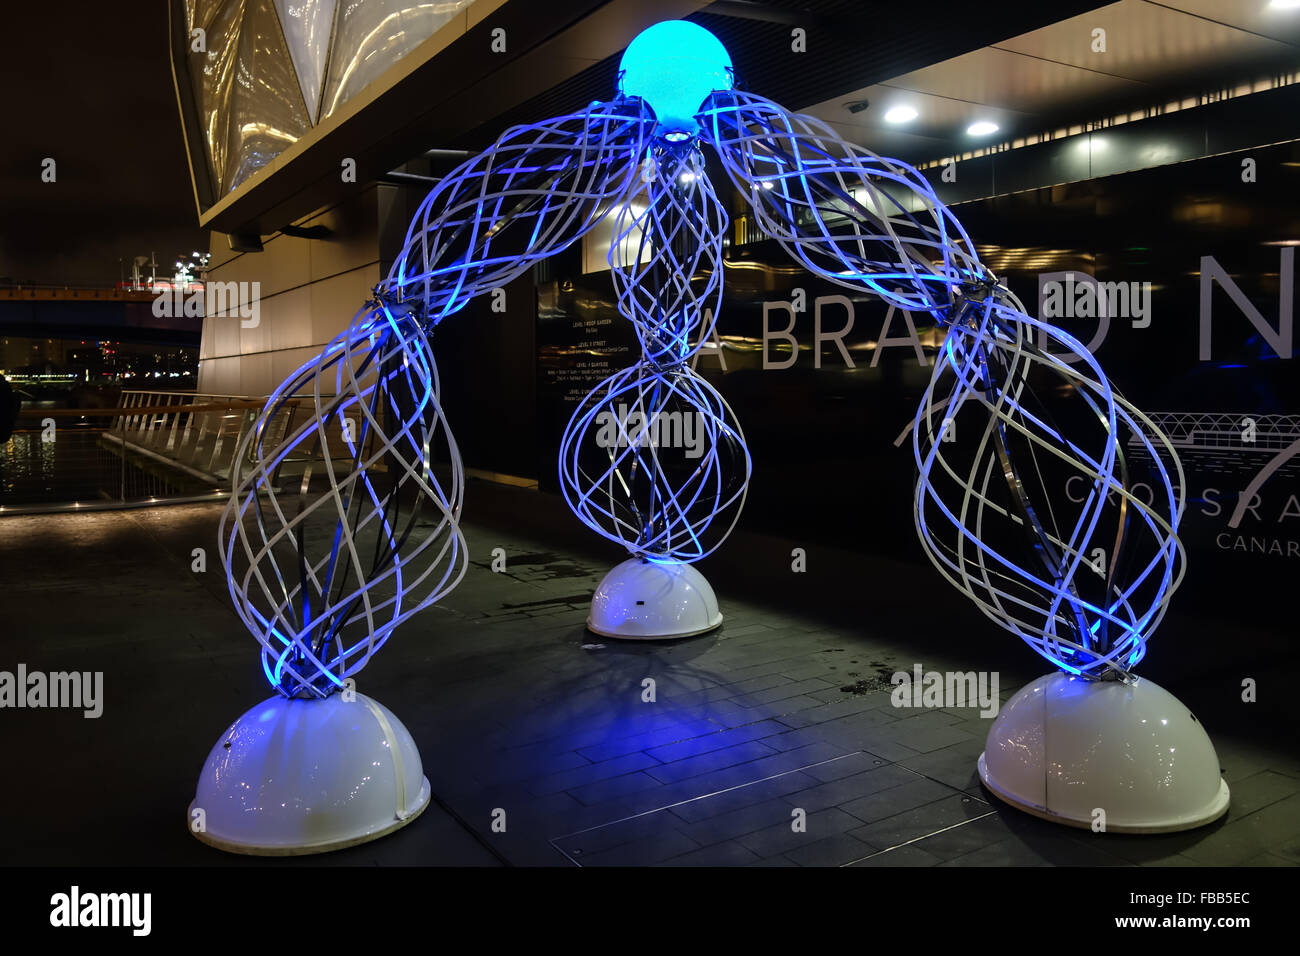 L'espace liquide 6.1 par Daan Roosegaarde est exposée au public à l'hiver 2016 Fête des lumières à Canary Wharf. Banque D'Images